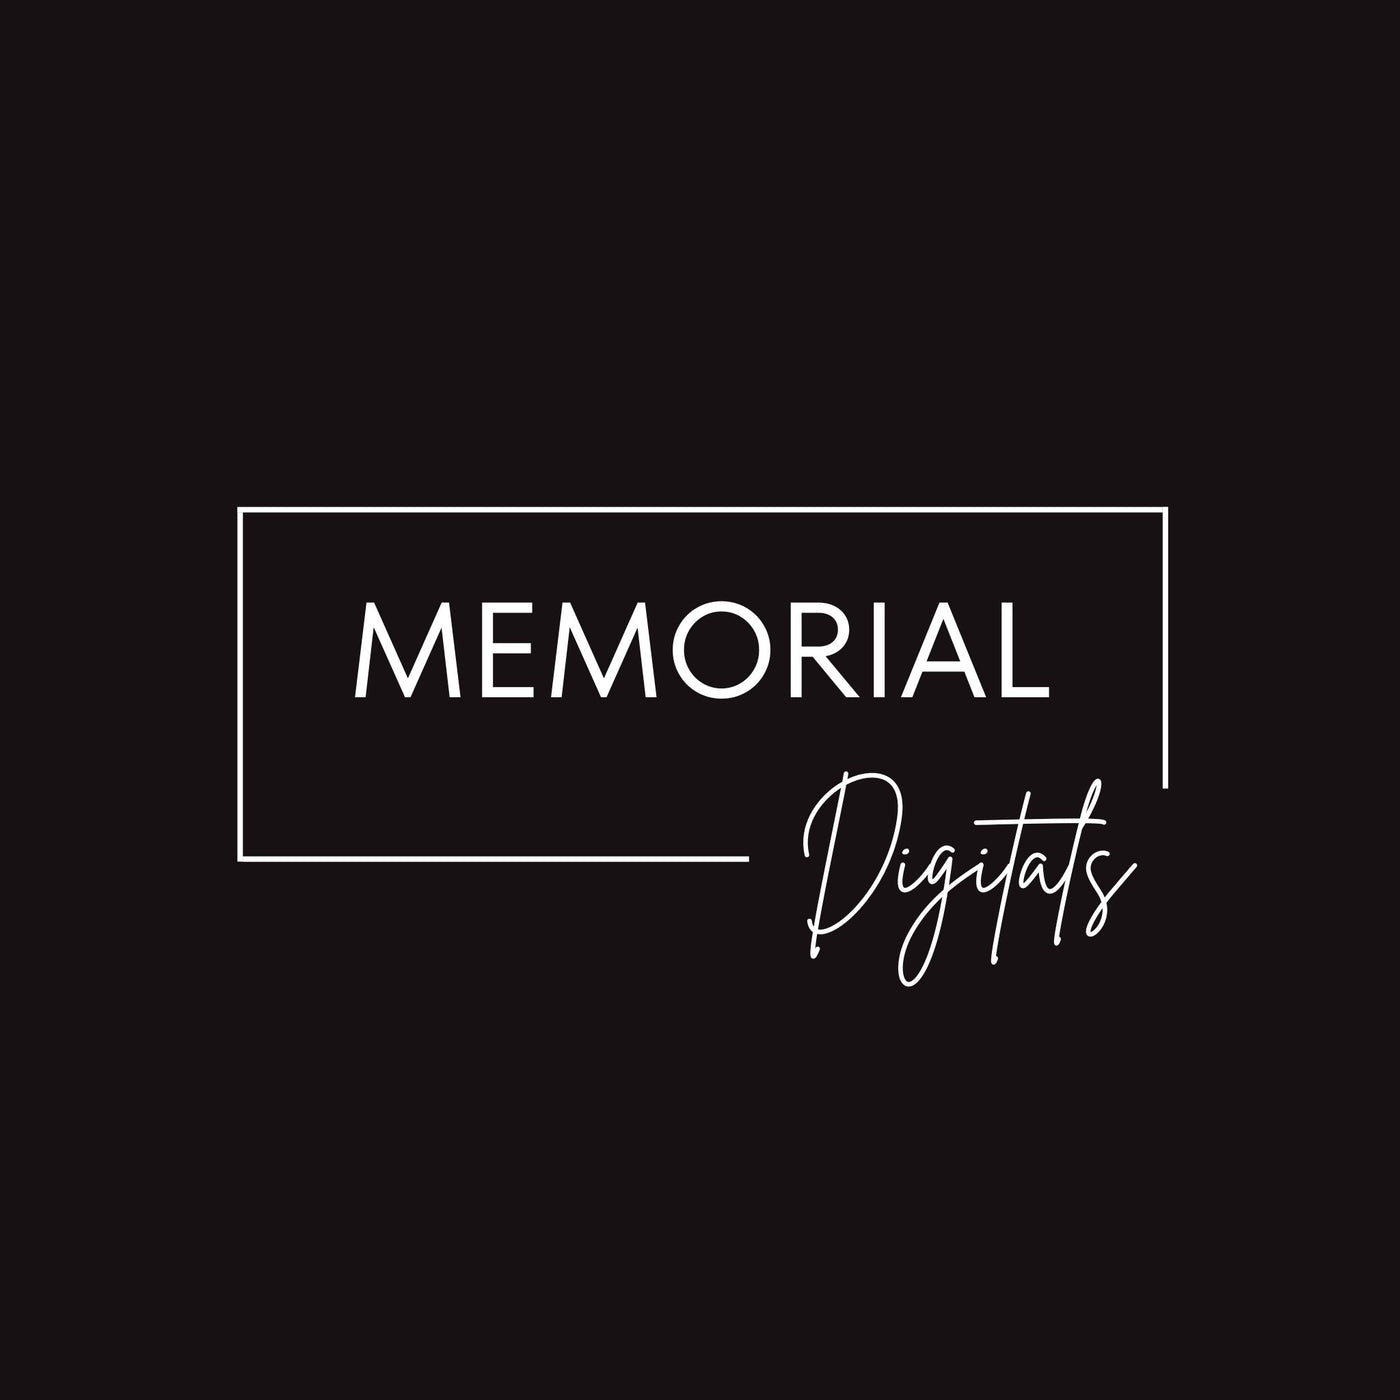 Memorial (Digital Files)